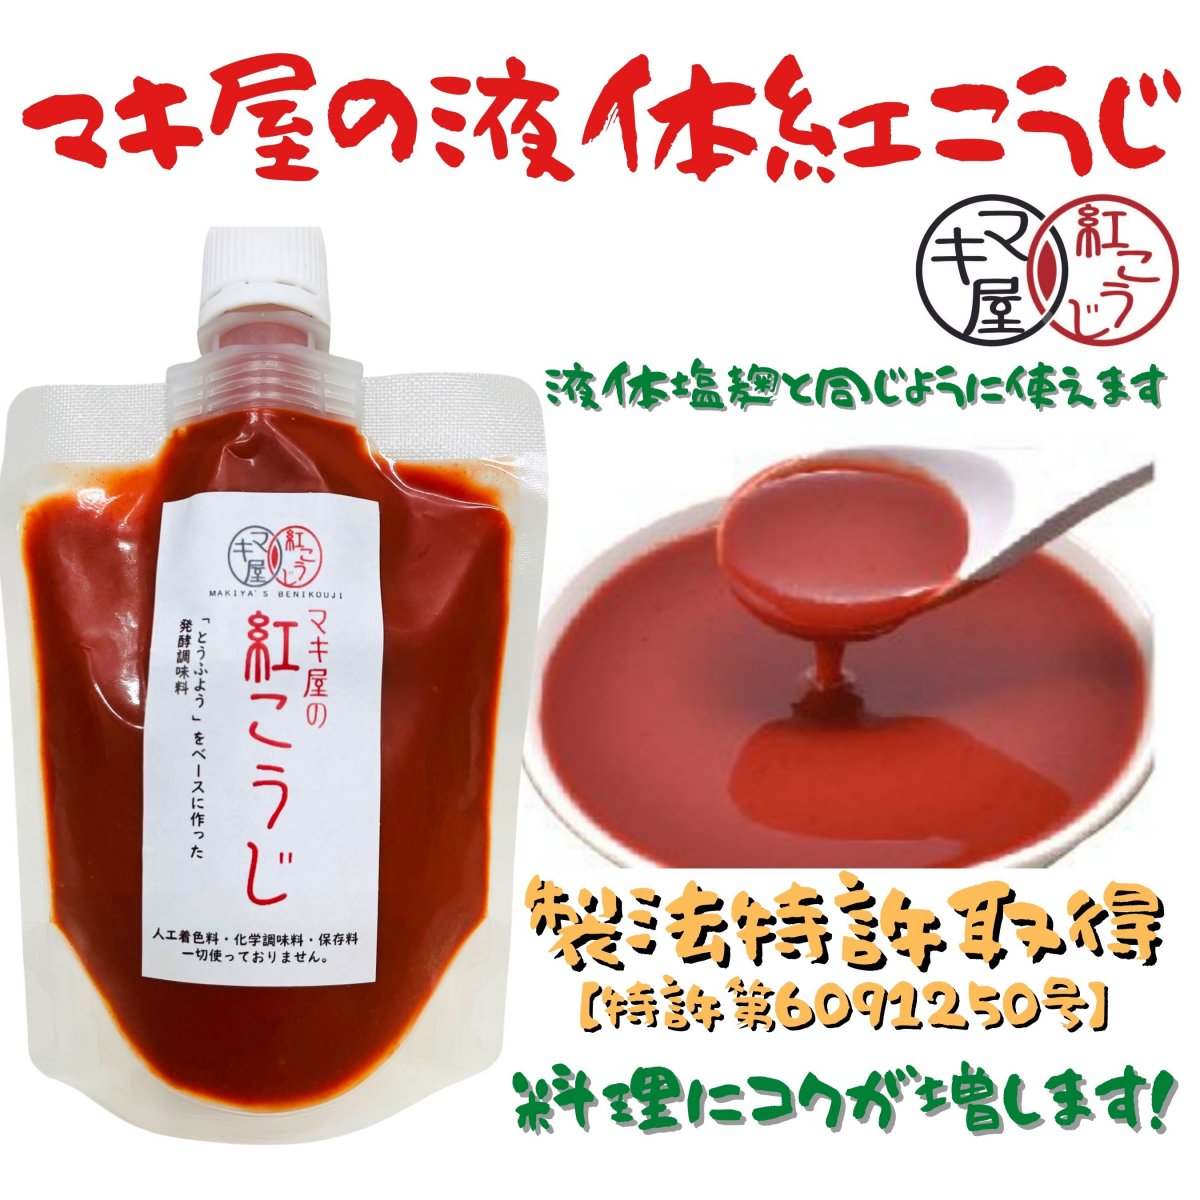 【製法特許取得】マキ屋の紅こうじ（液体紅麹）自社で培養、管理している紅麹で作った液体調味料。料理に使うとよりコクが出ます。